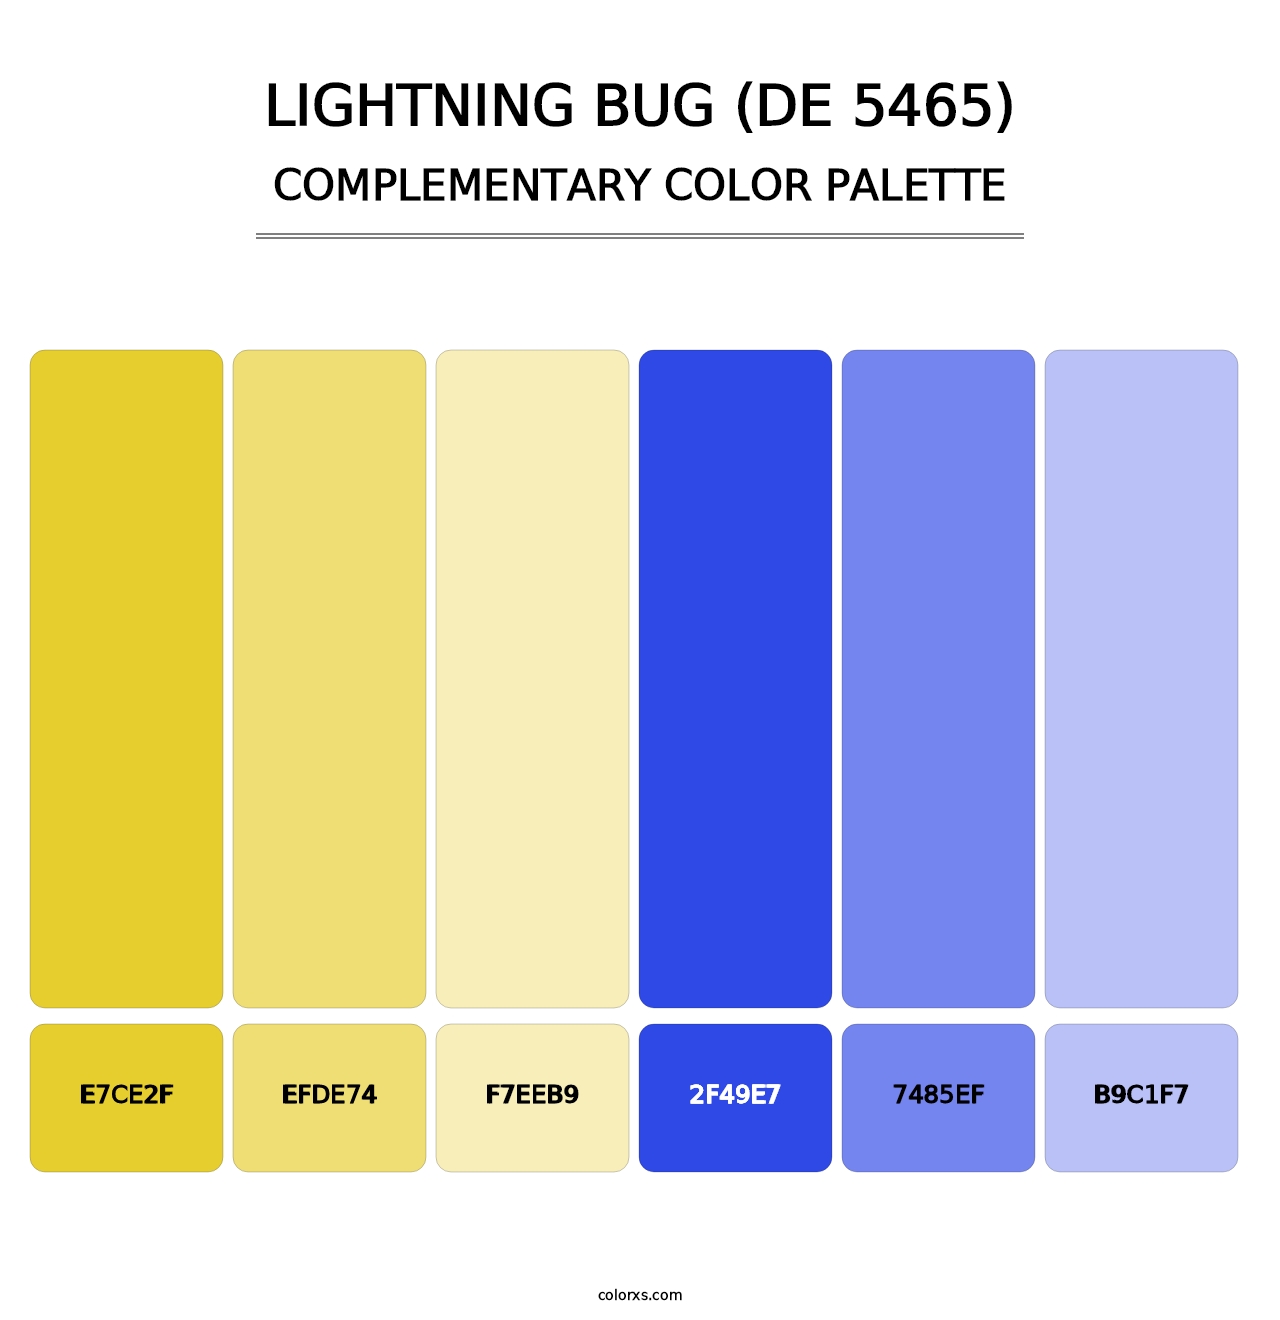 Lightning Bug (DE 5465) - Complementary Color Palette